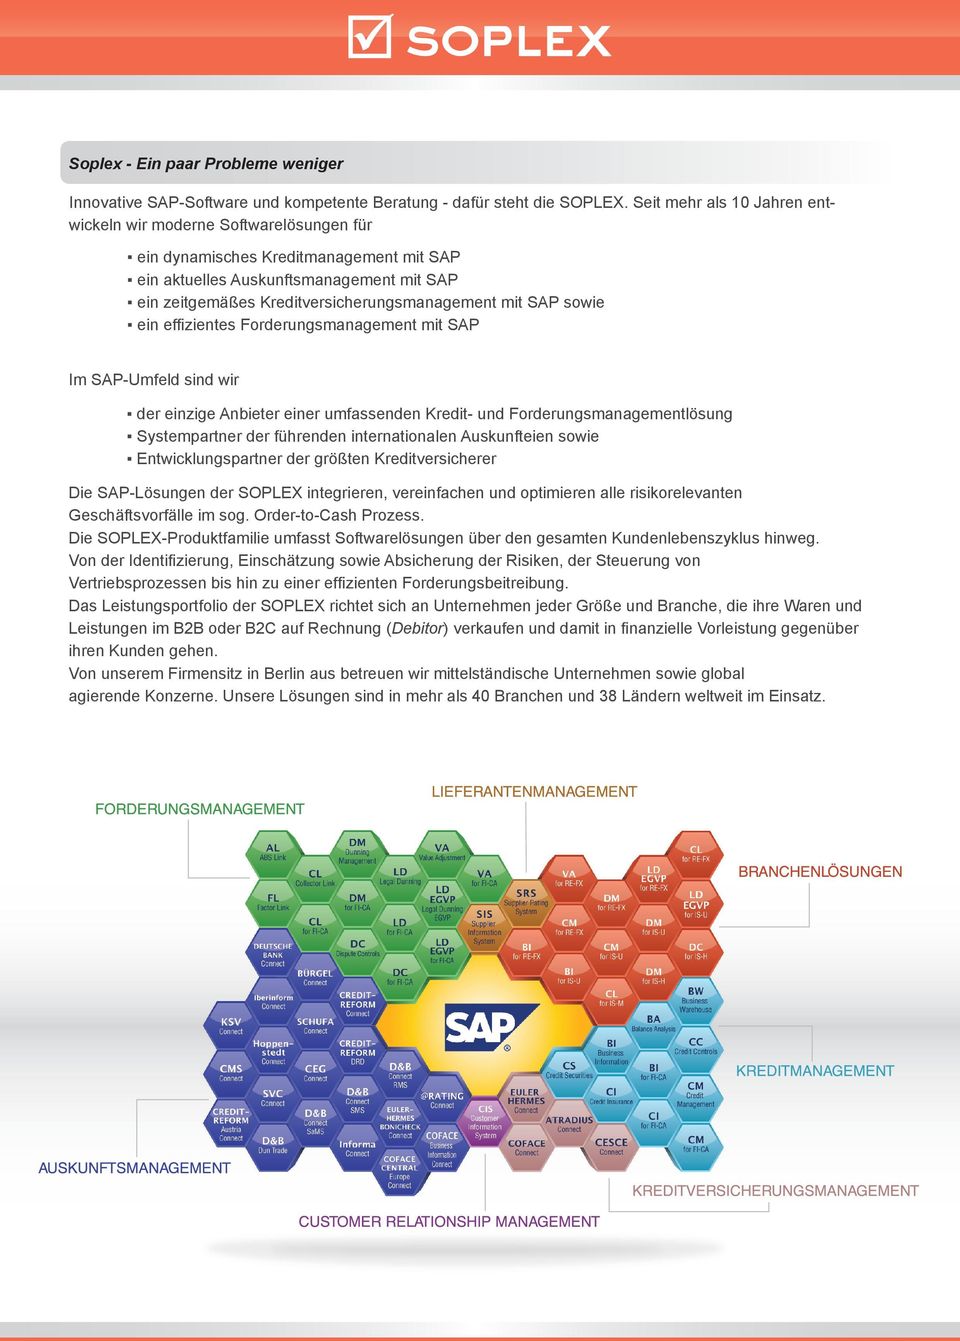 mit SAP sowie ein effi zientes Forderungsmanagement mit SAP Im SAP-Umfeld sind wir der einzige Anbieter einer umfassenden Kredit- und Forderungsmanagementlösung Systempartner der führenden